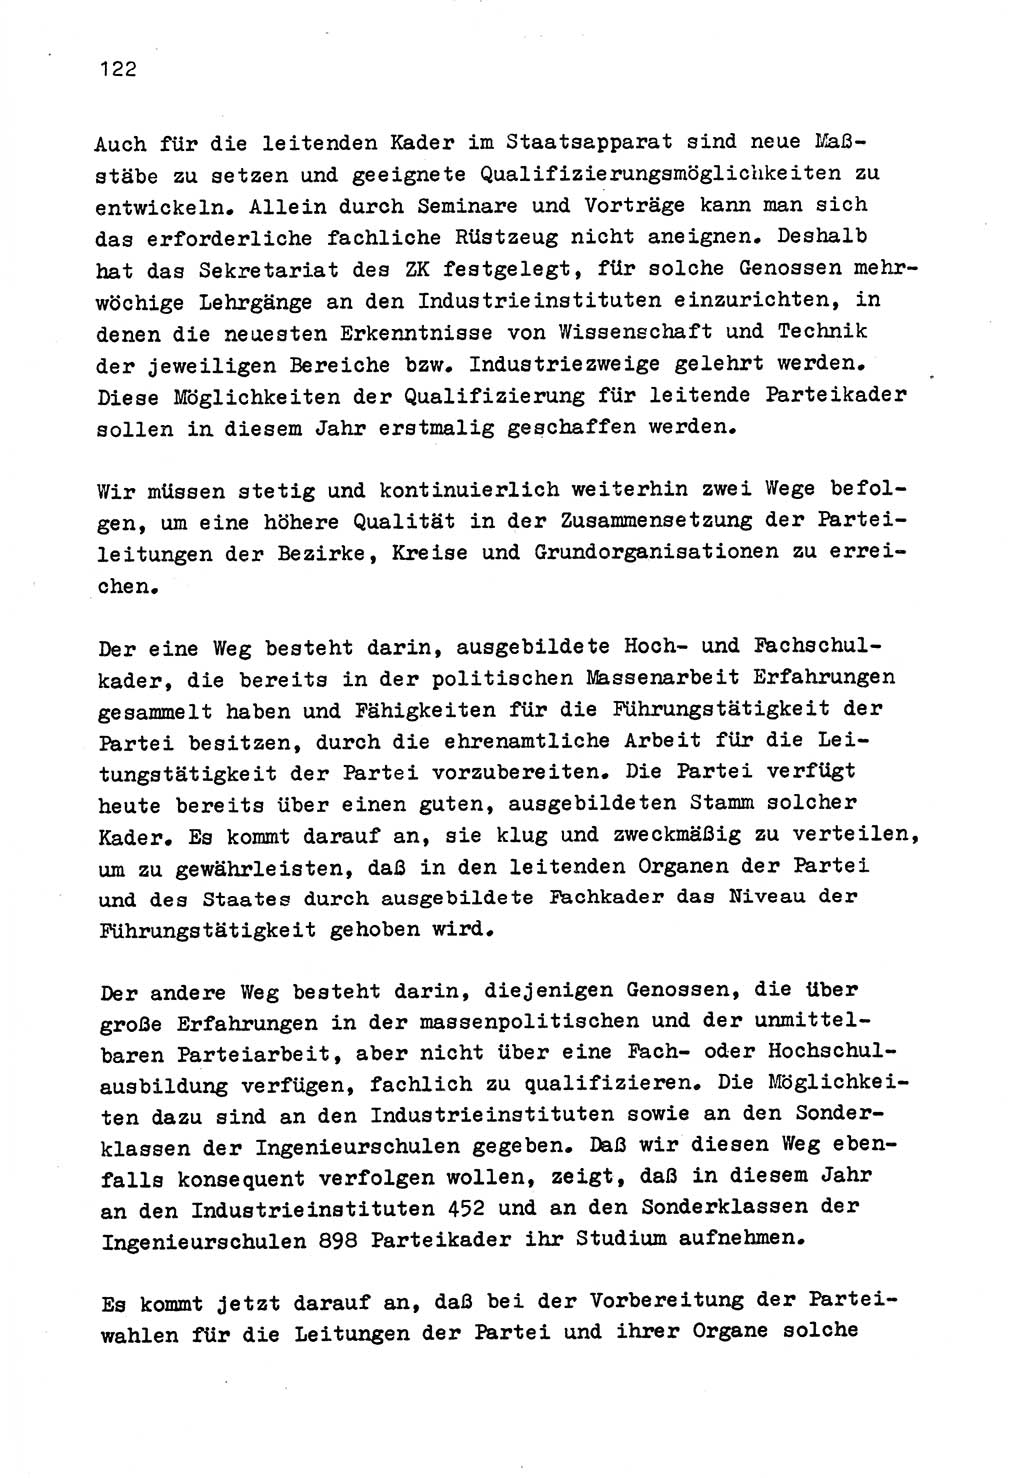 Zu Fragen der Parteiarbeit [Sozialistische Einheitspartei Deutschlands (SED) Deutsche Demokratische Republik (DDR)] 1979, Seite 122 (Fr. PA SED DDR 1979, S. 122)